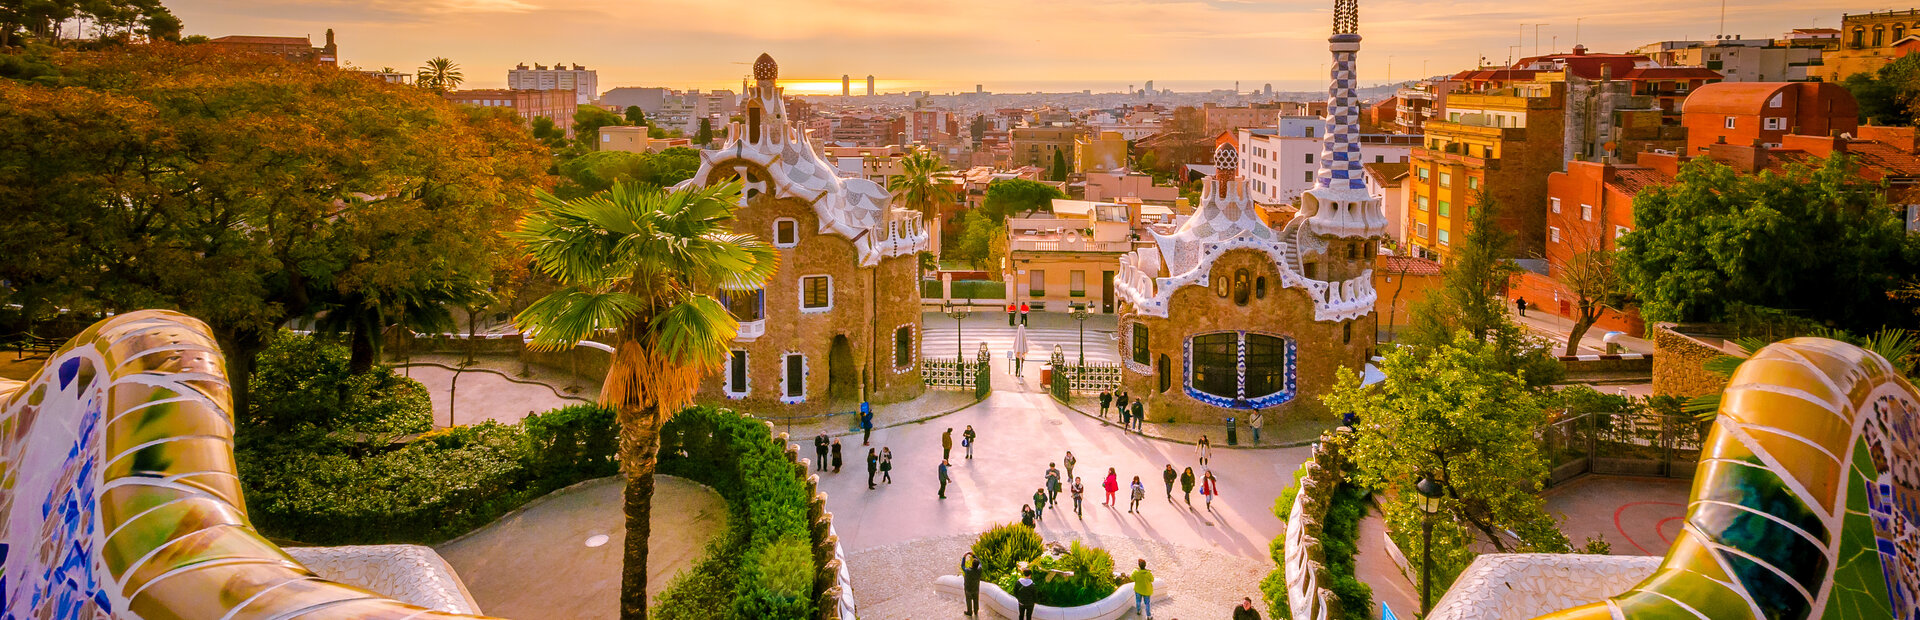 Príručka prežitia pre gastroturistu v Barcelone